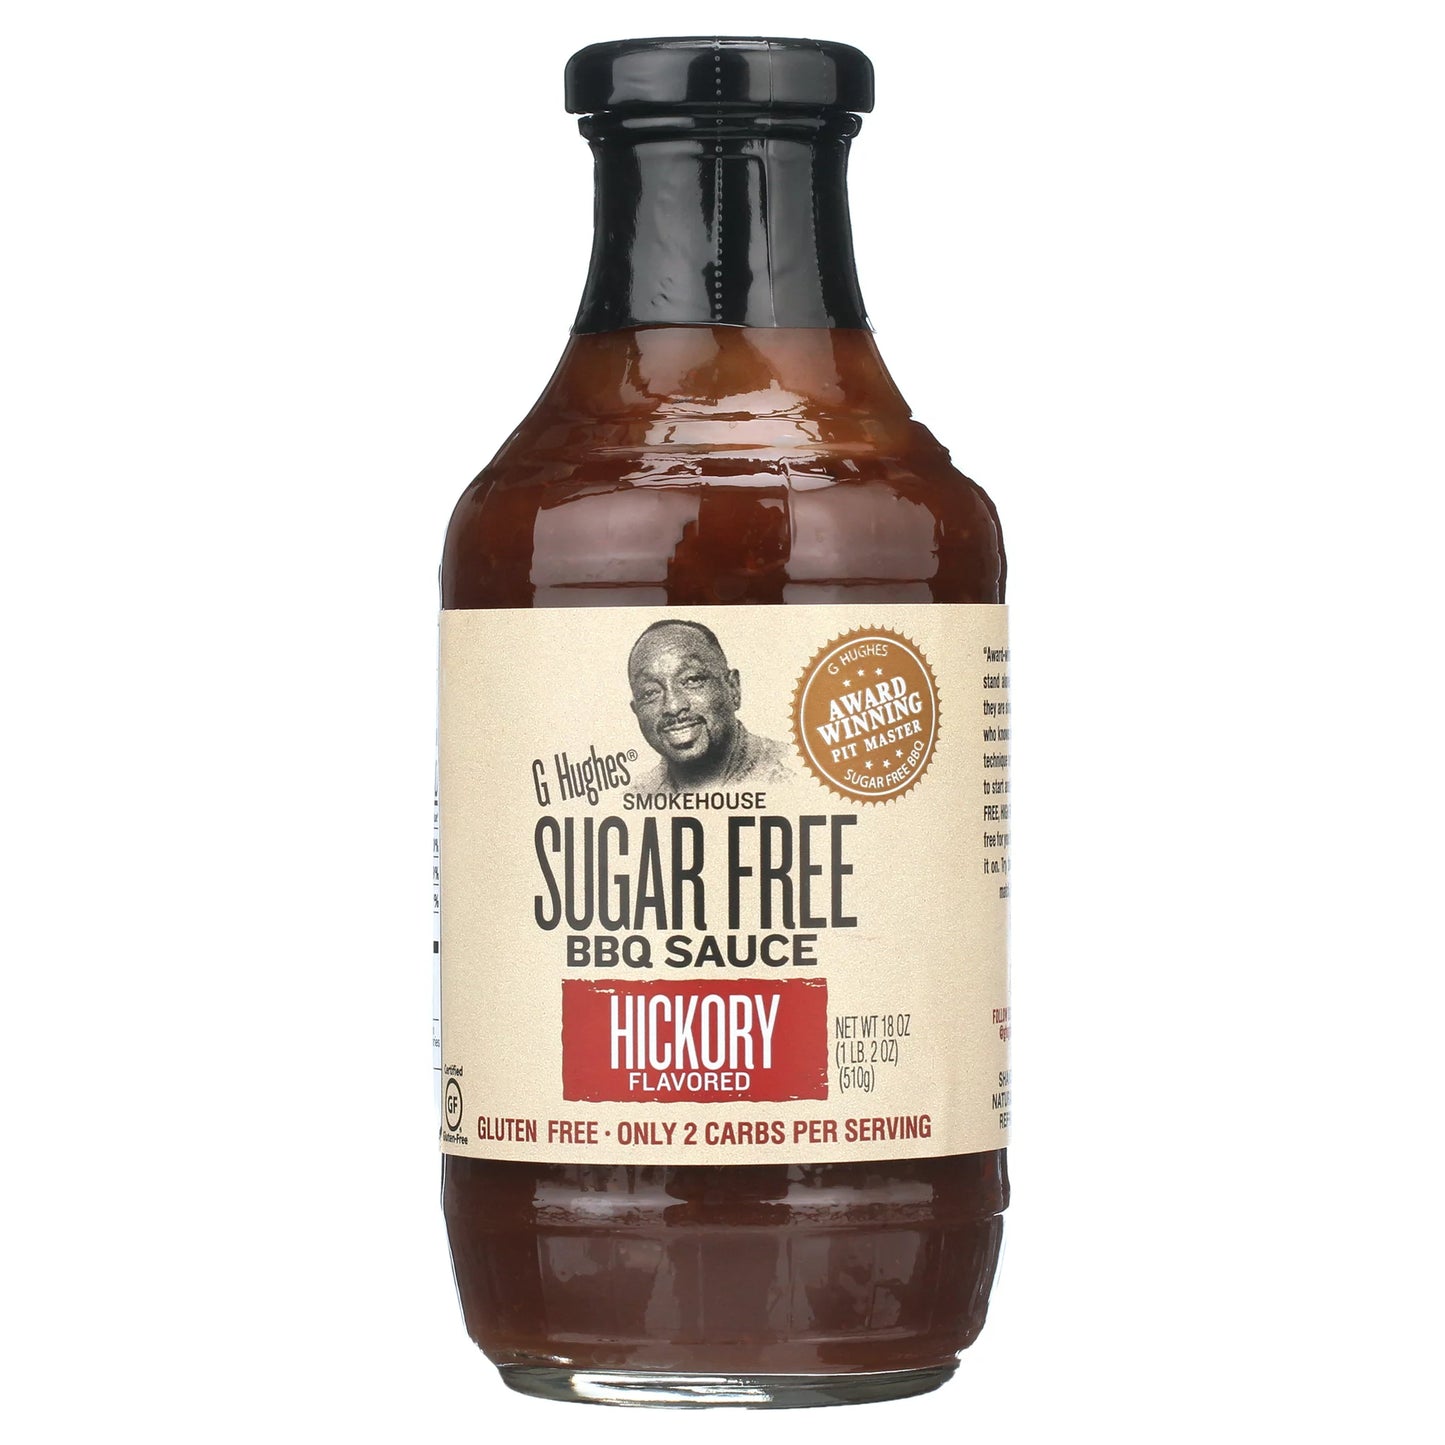 Sugar Free Hickory BBQ Sauce (18 oz)